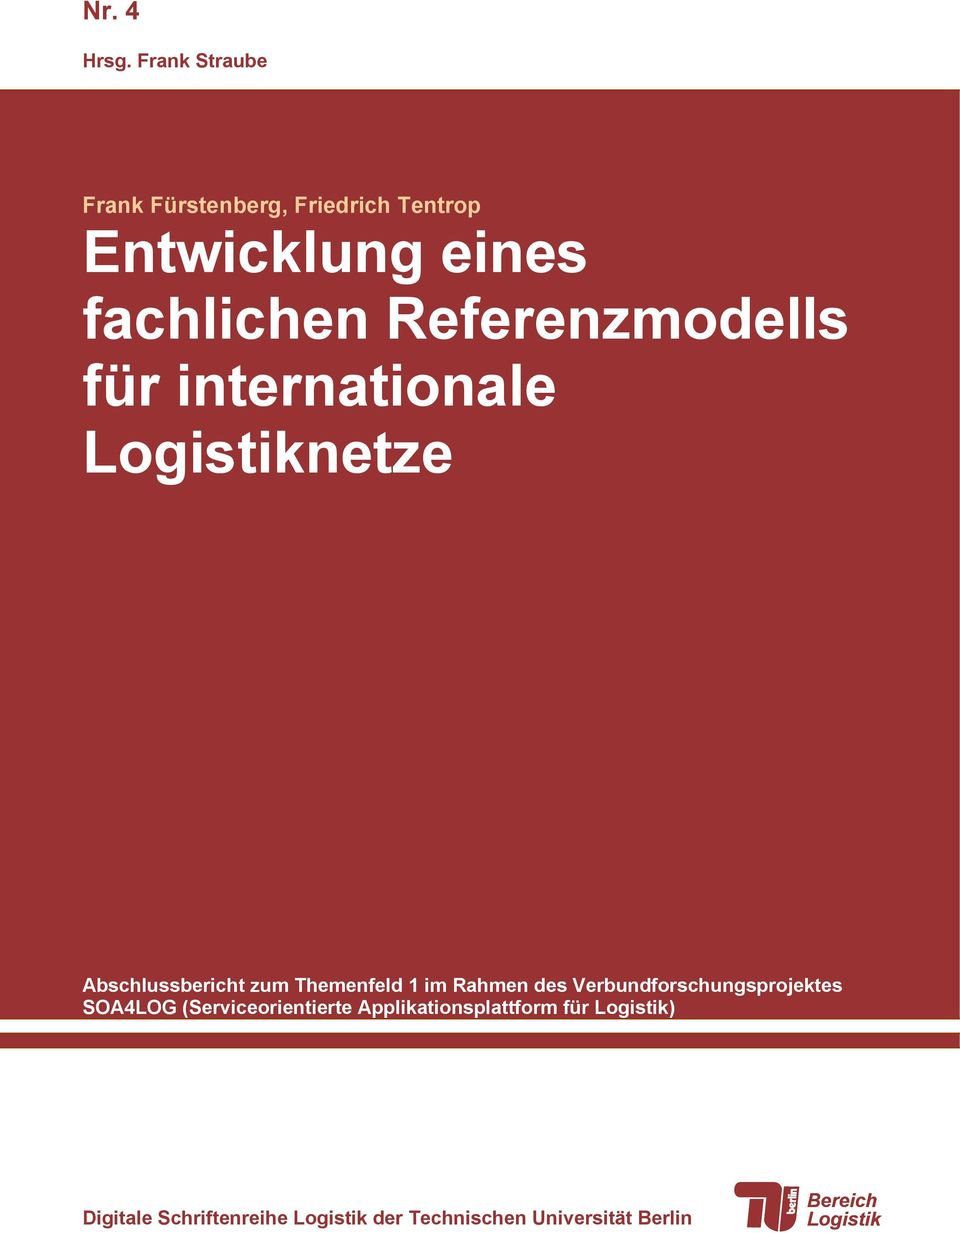 Referenzmodells für internationale Logistiknetze Abschlussbericht zum Themenfeld 1 im